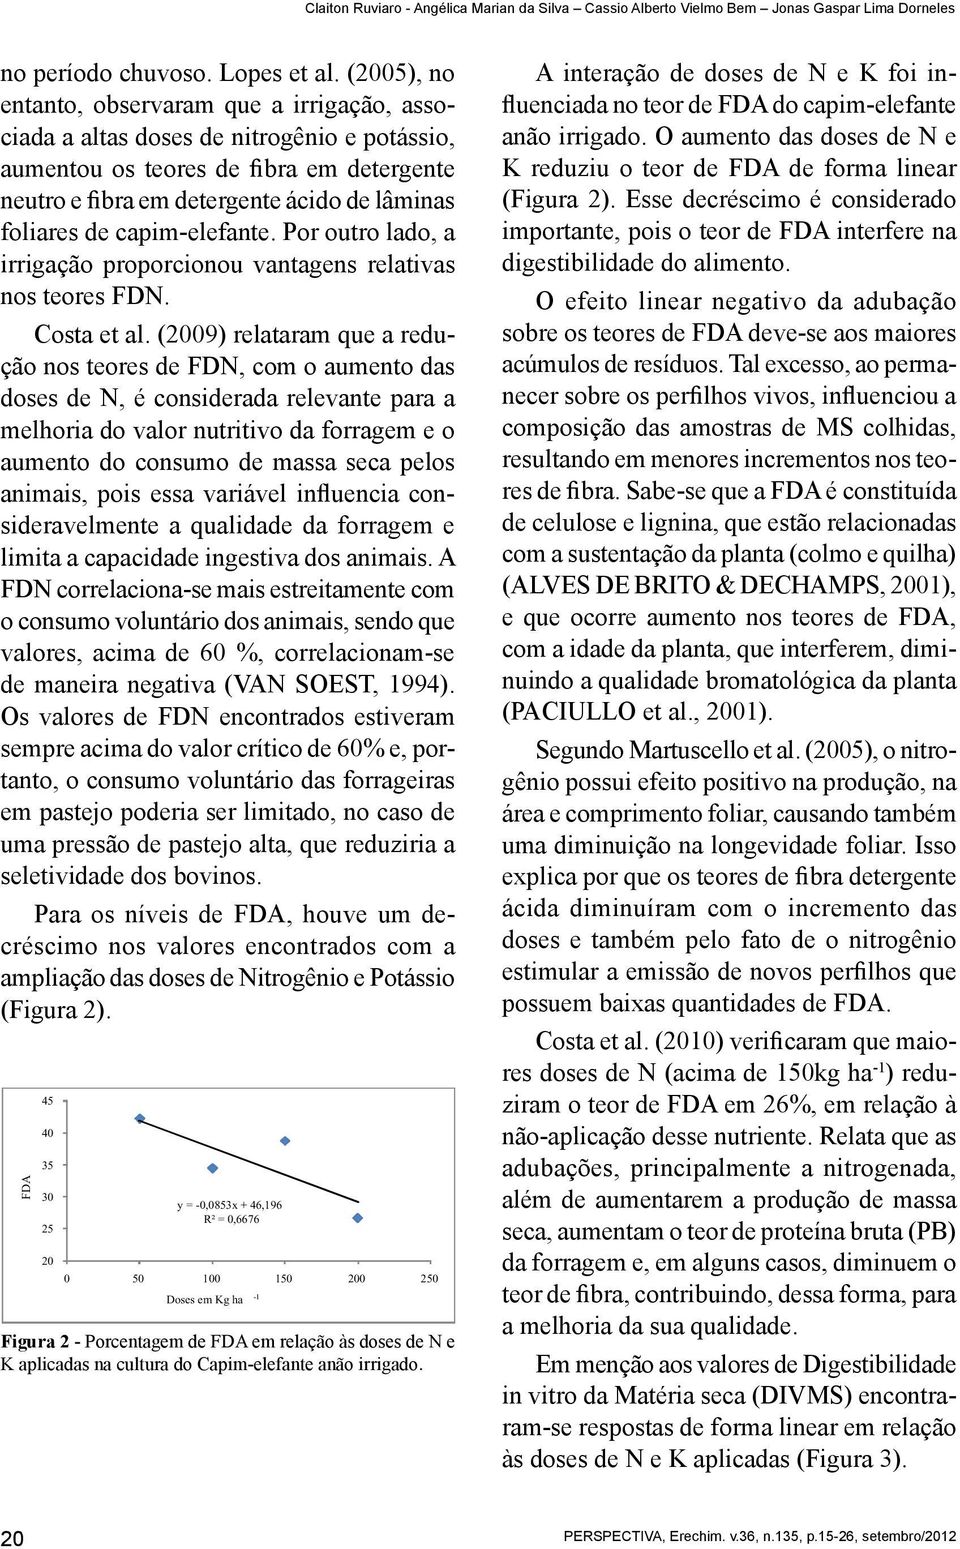 capim-elefante. Por outro lado, a irrigação proporcionou vantagens relativas nos teores FDN. Costa et al.